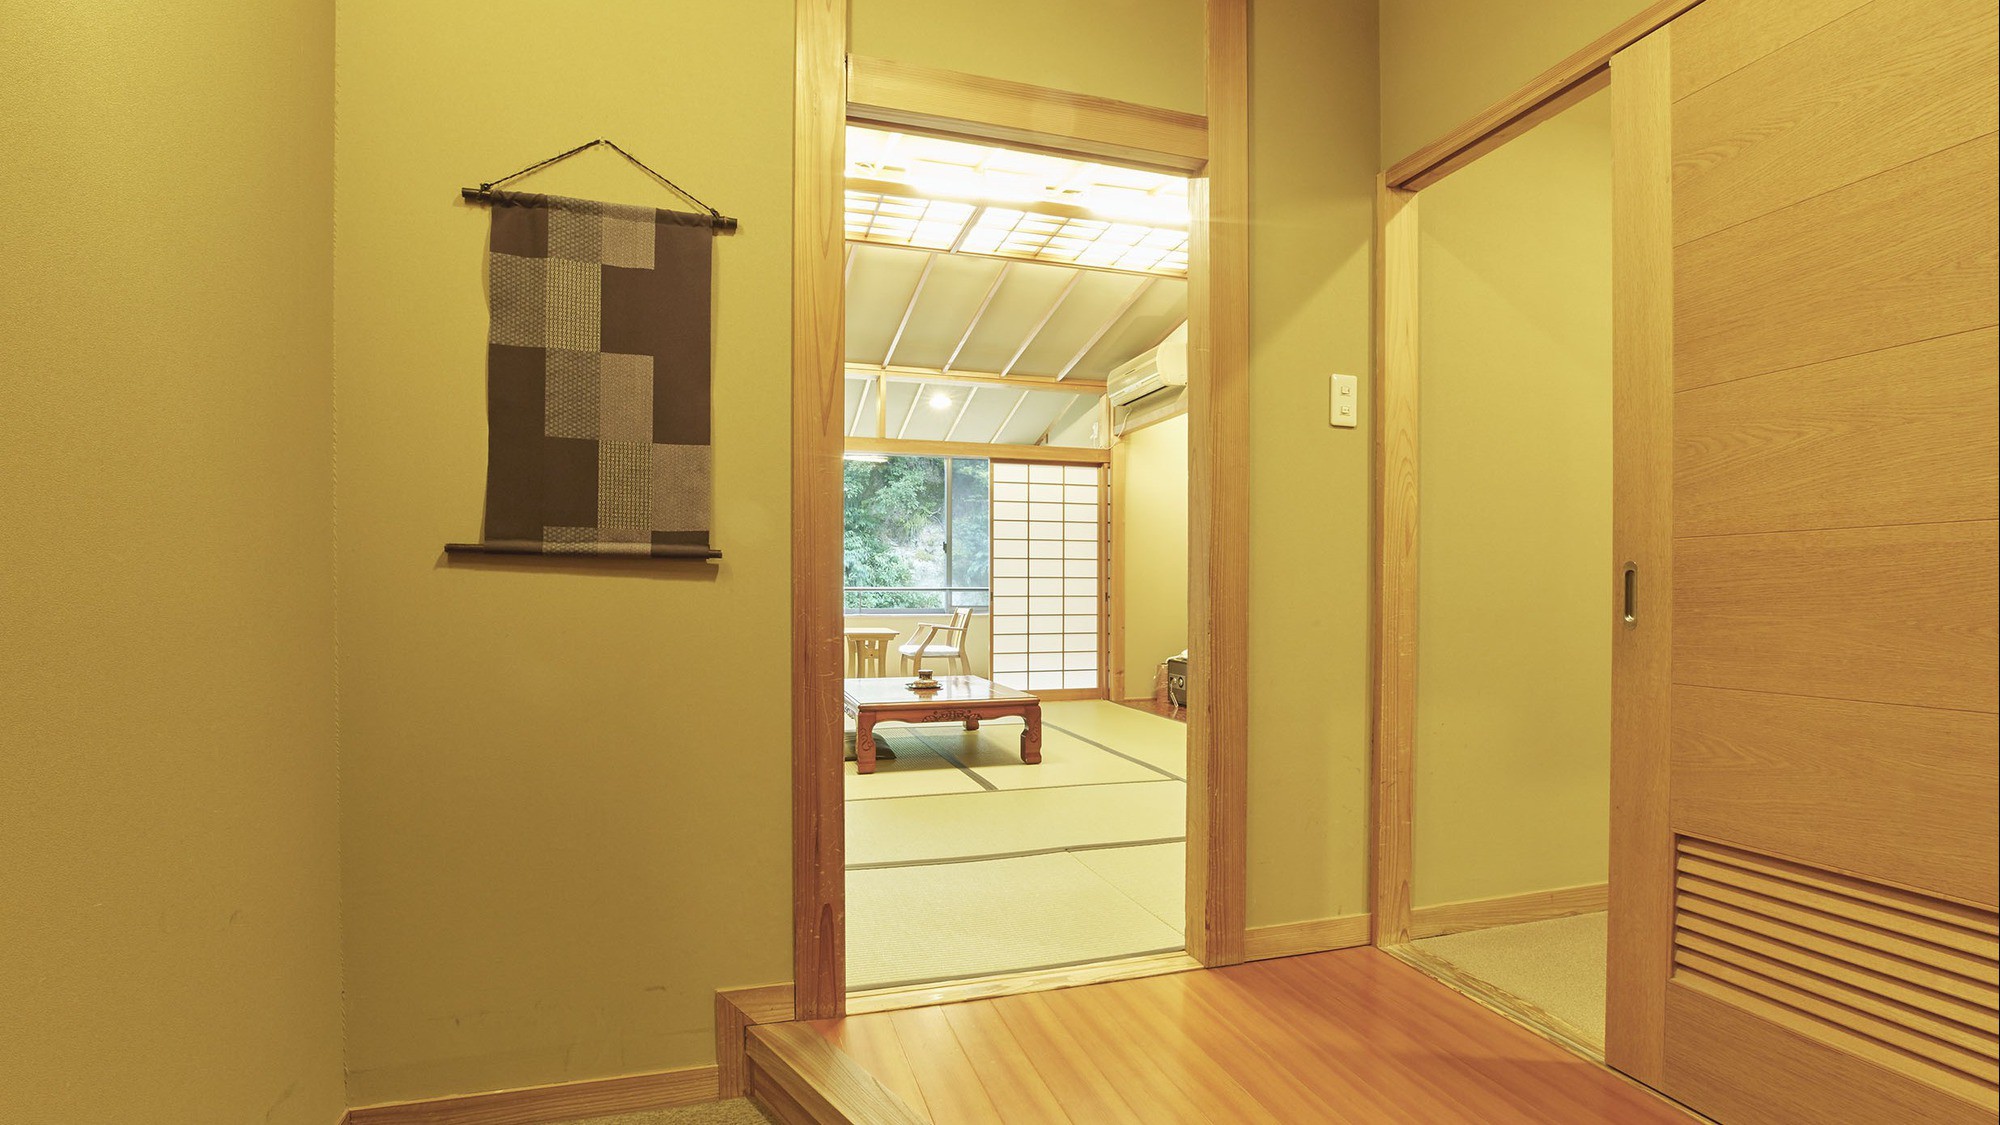 【客室一例】南館客室…渓流沿いのお部屋。明るく清楚な造りの和室です。